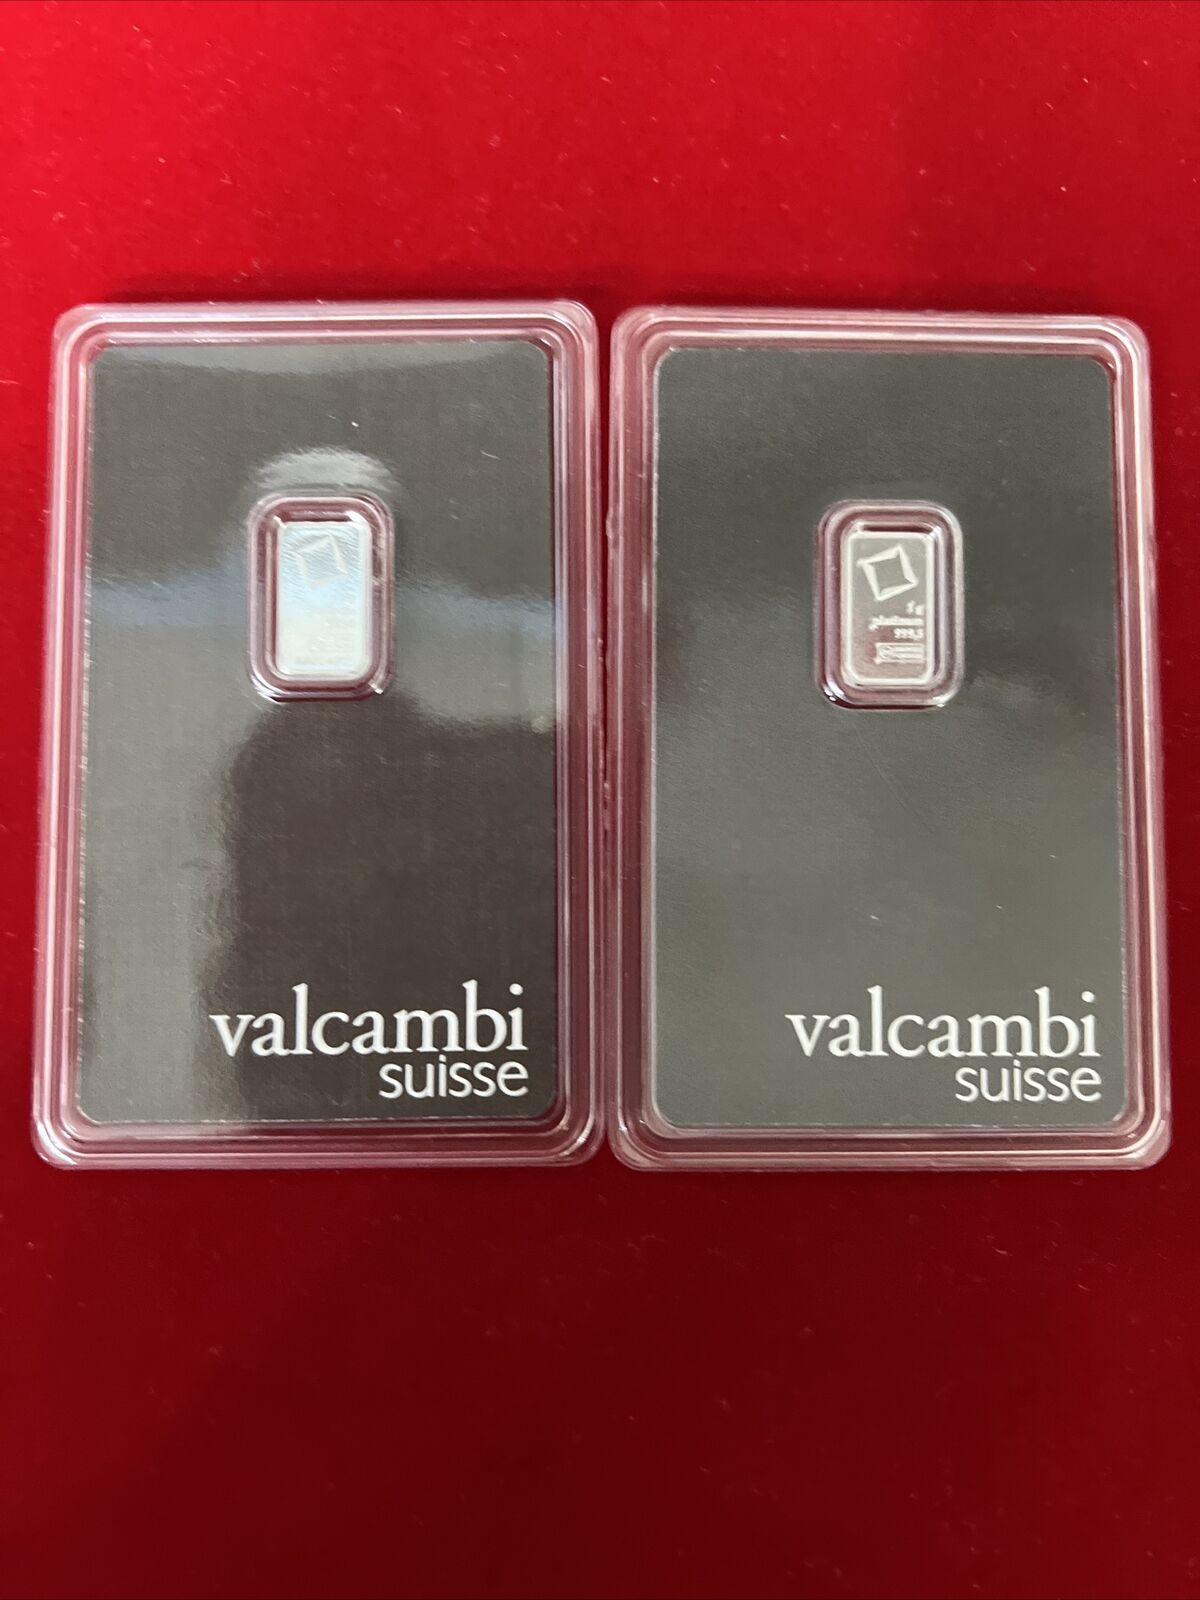 Valcambi Suisse Platinum Bat 1 Gram .9995 Fine  - 2 Pcs